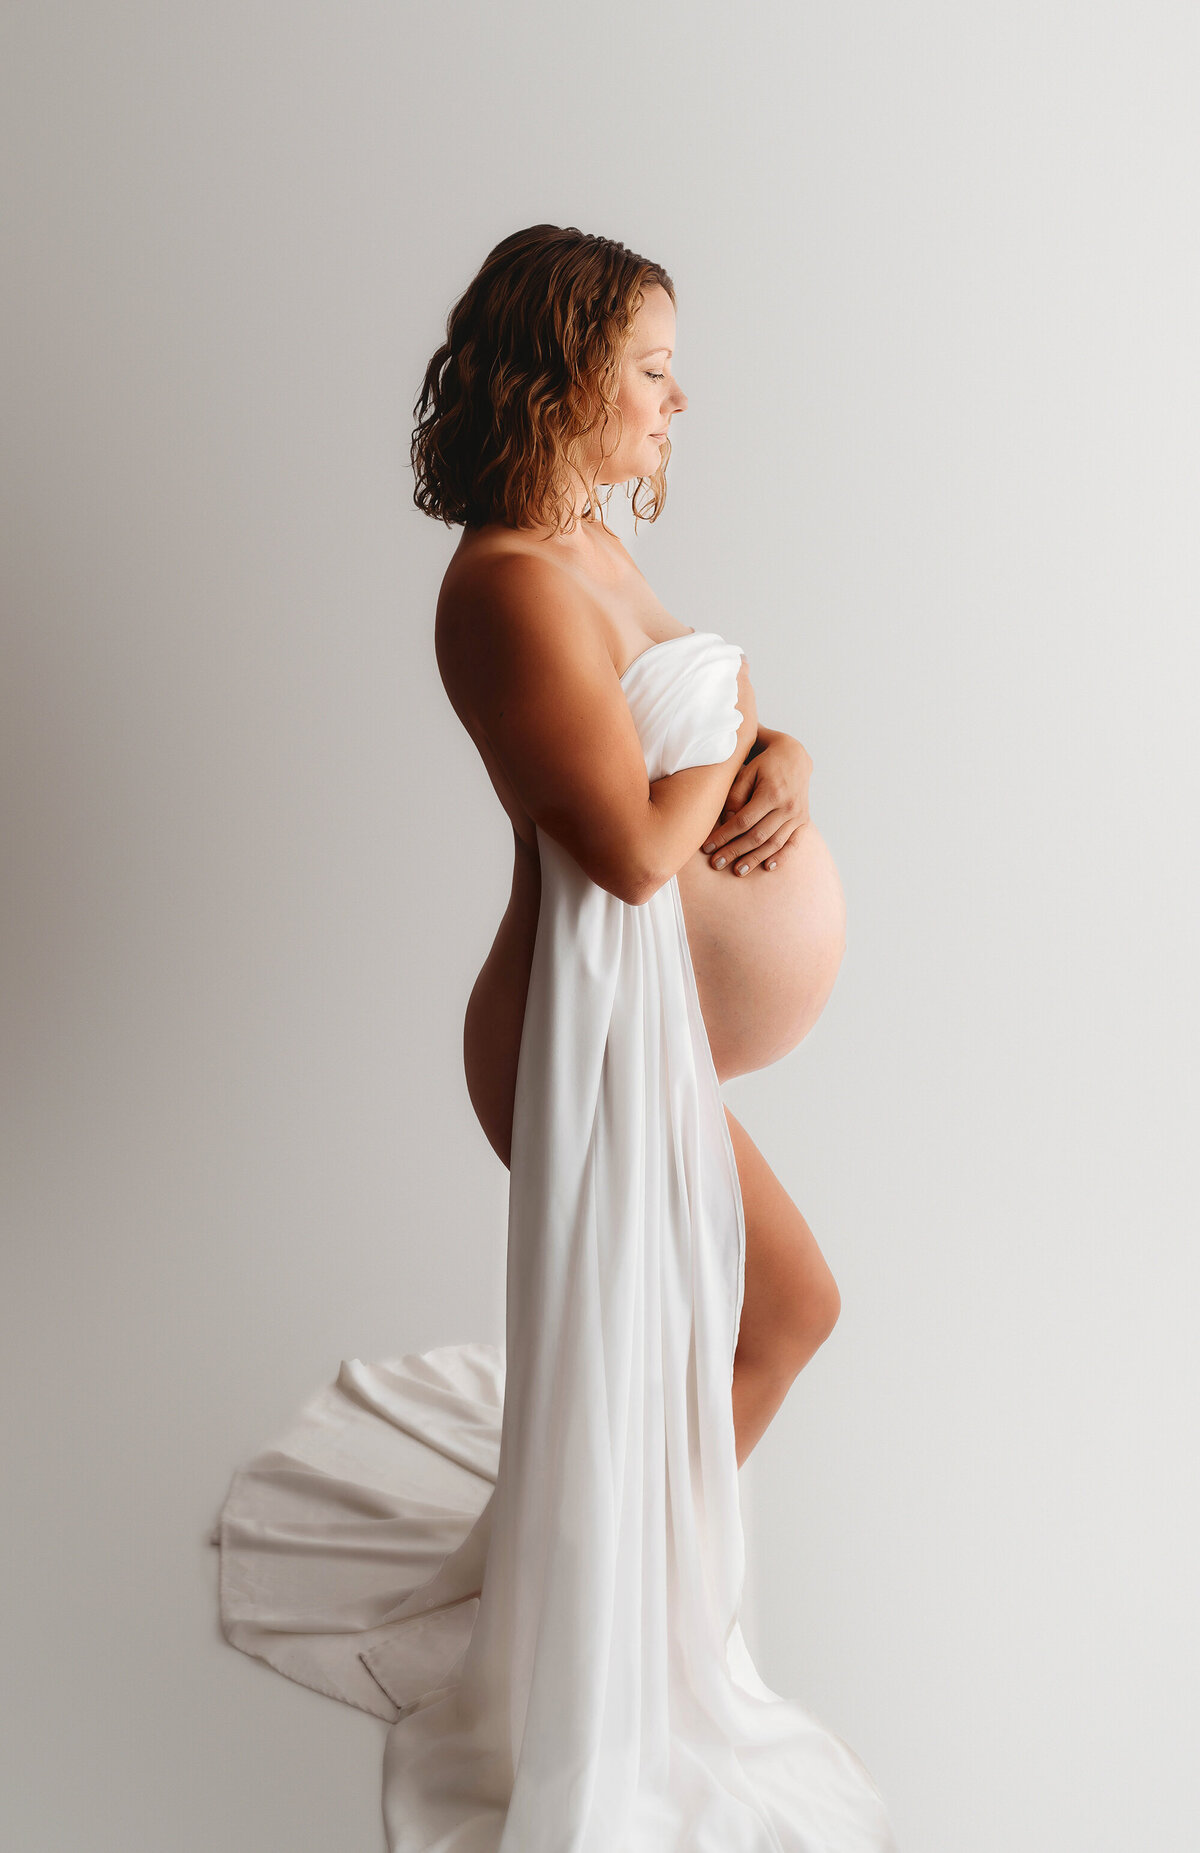 Asheville-Maternity-Photography-190 copy